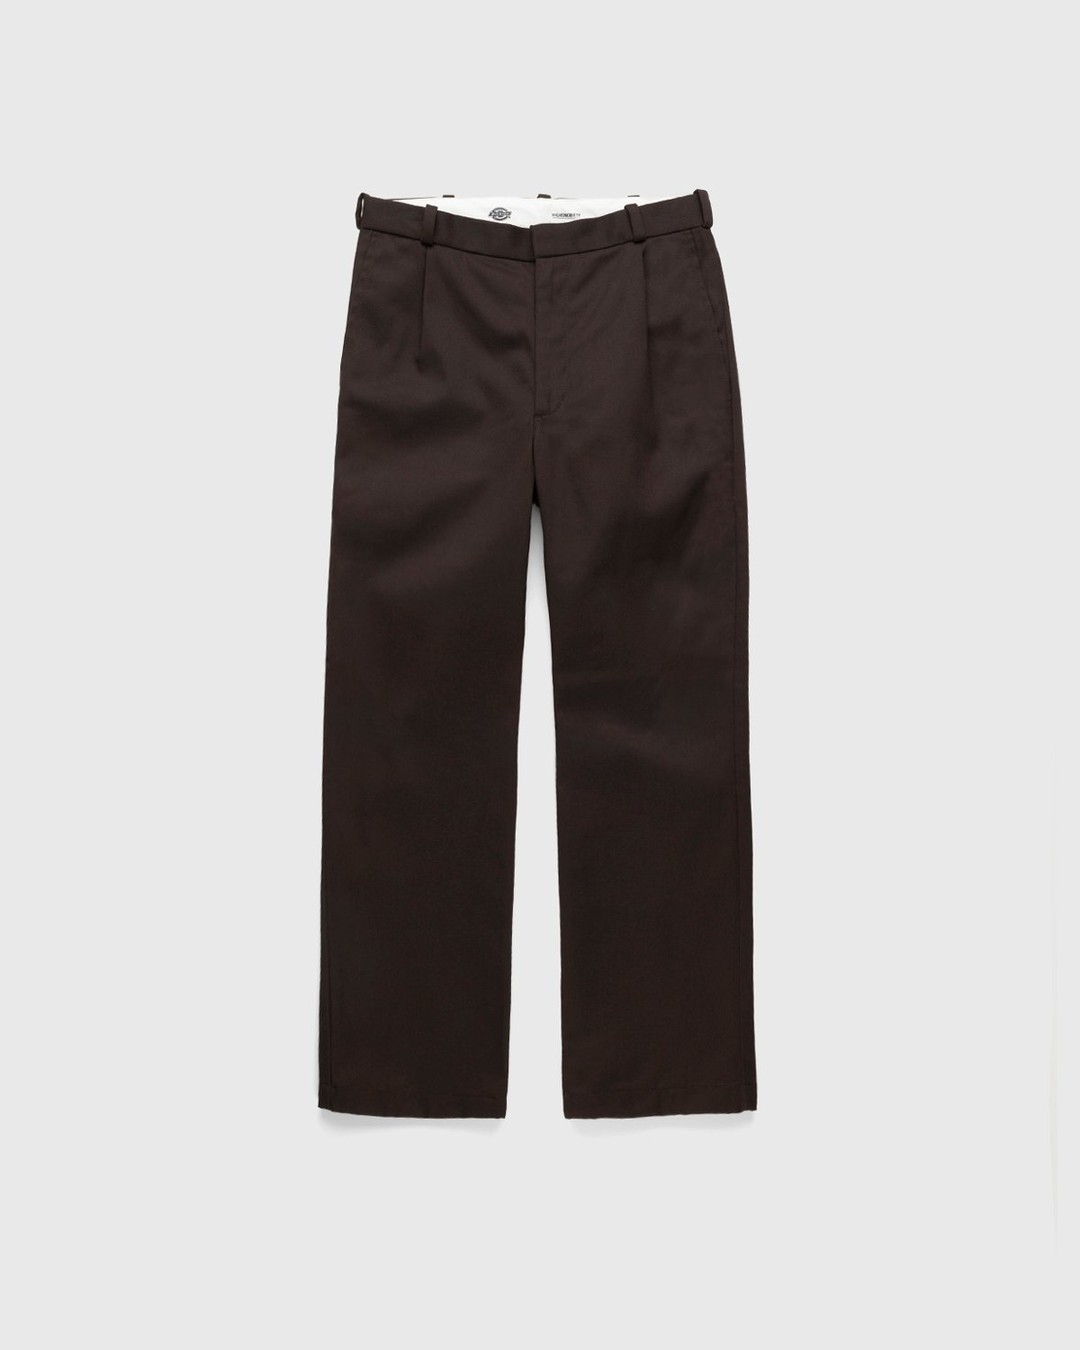 Highsnobiety x Dickies – Pleated Work Pants Dark Brown - Work Pants - Brown - Image 1